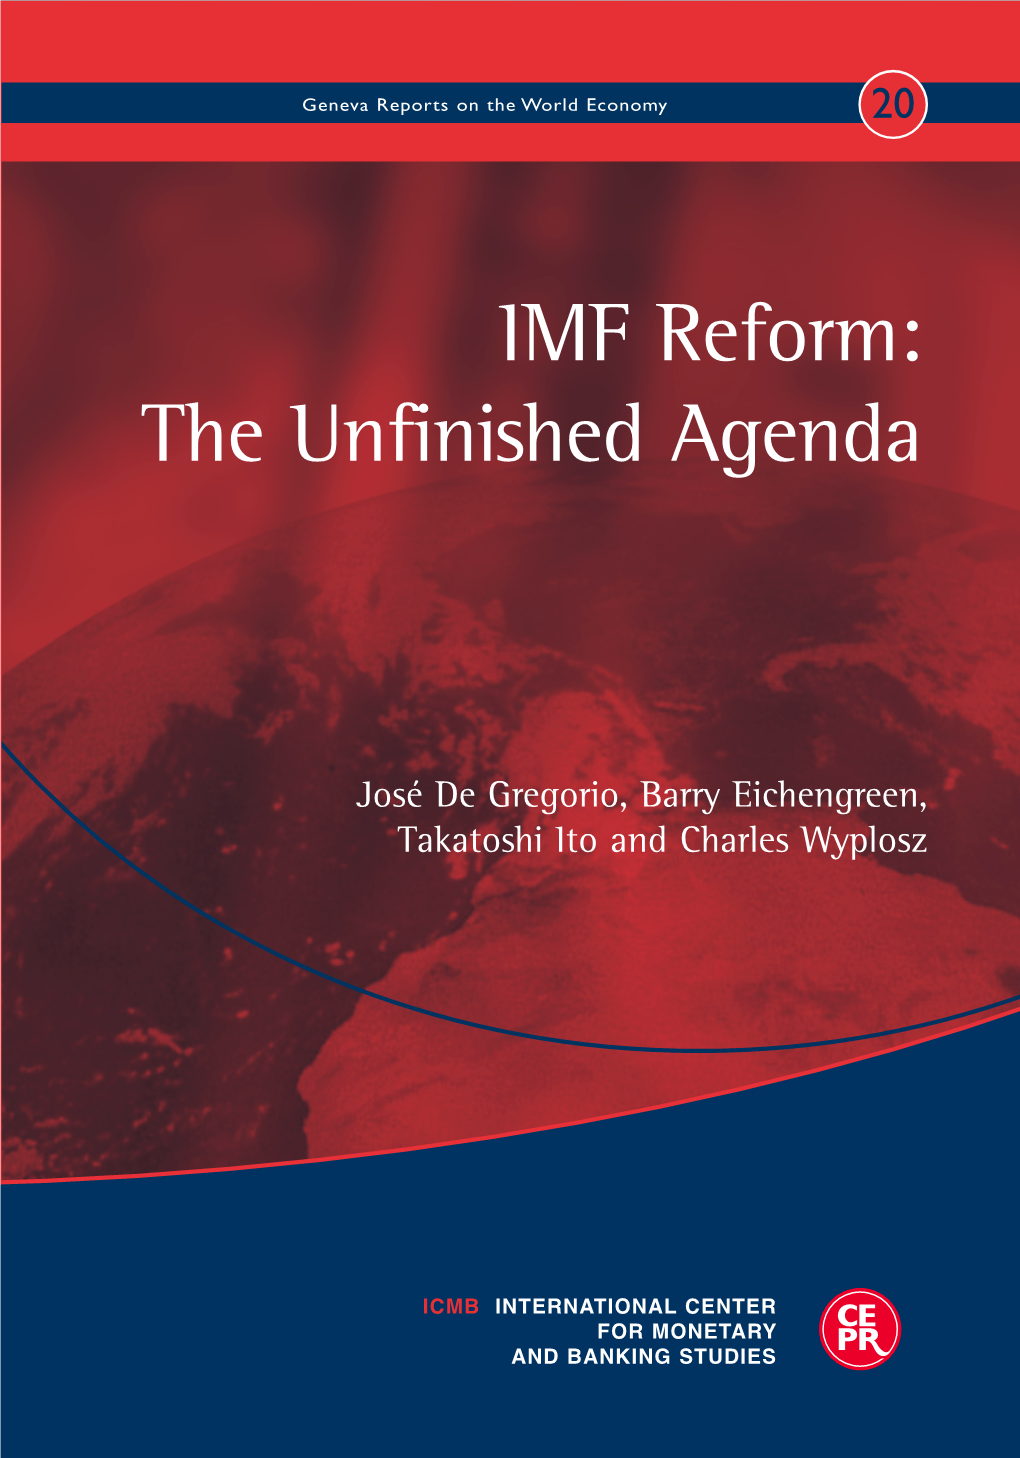 IMF Reform: the Unfinished Agenda Geneva Reports on the World Economy 20 Economy World the on Reports Geneva Agenda Unfinished the Reform: IMF